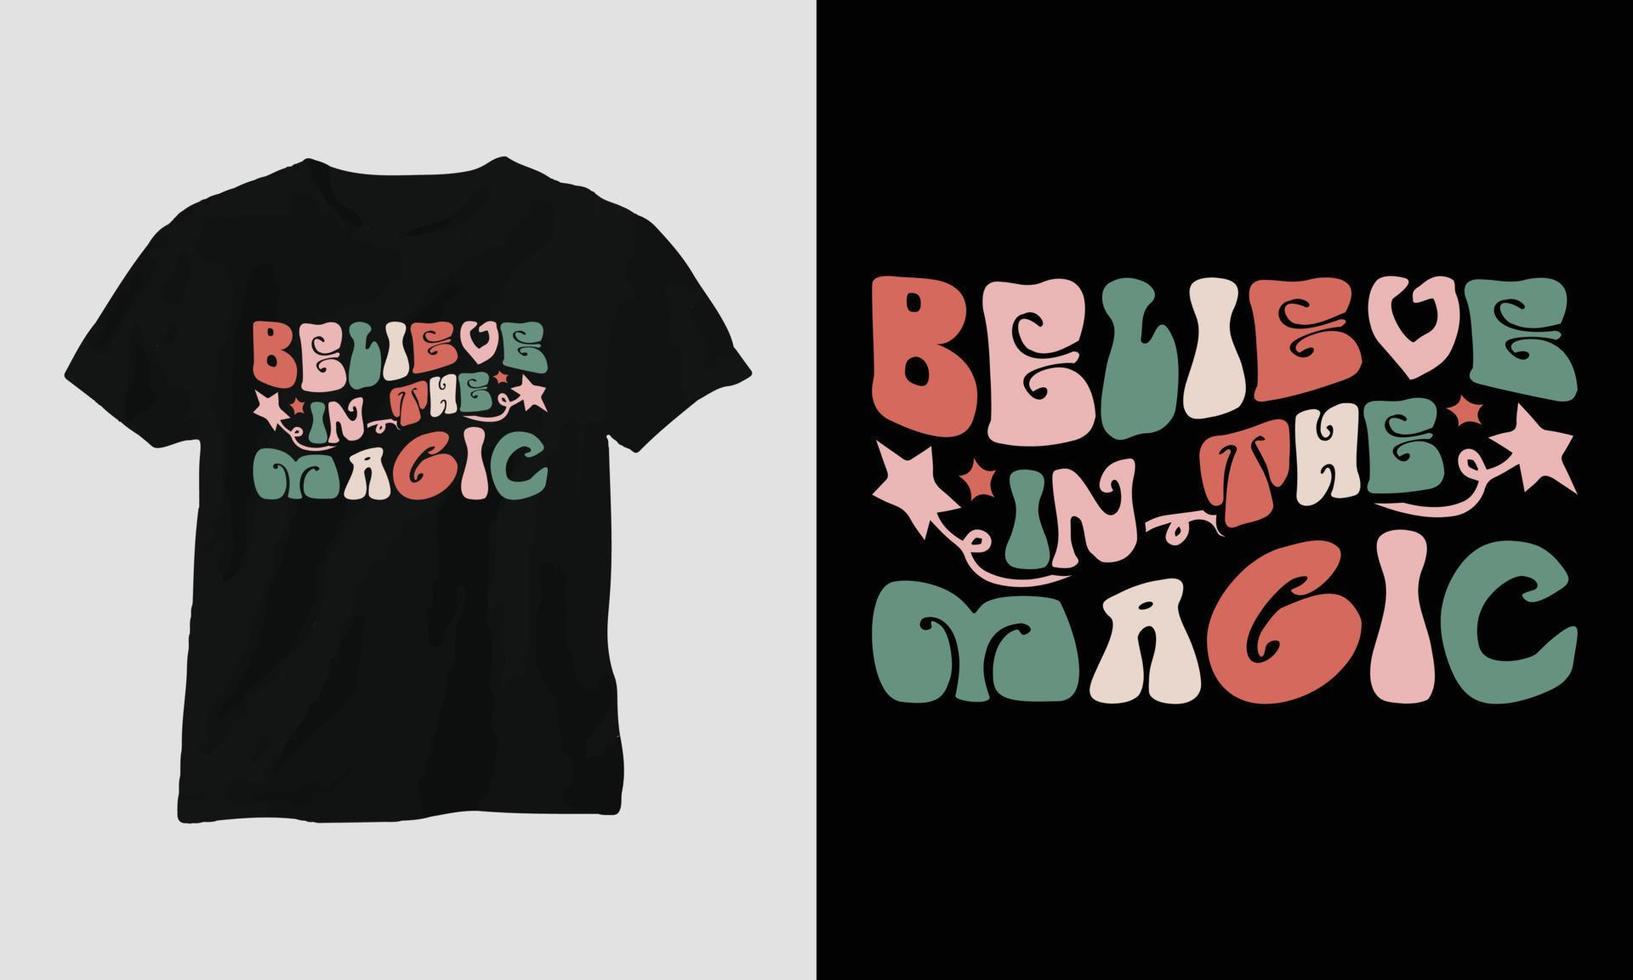 acredite na magia - t-shirt retrô de natal e design de vestuário. vetor